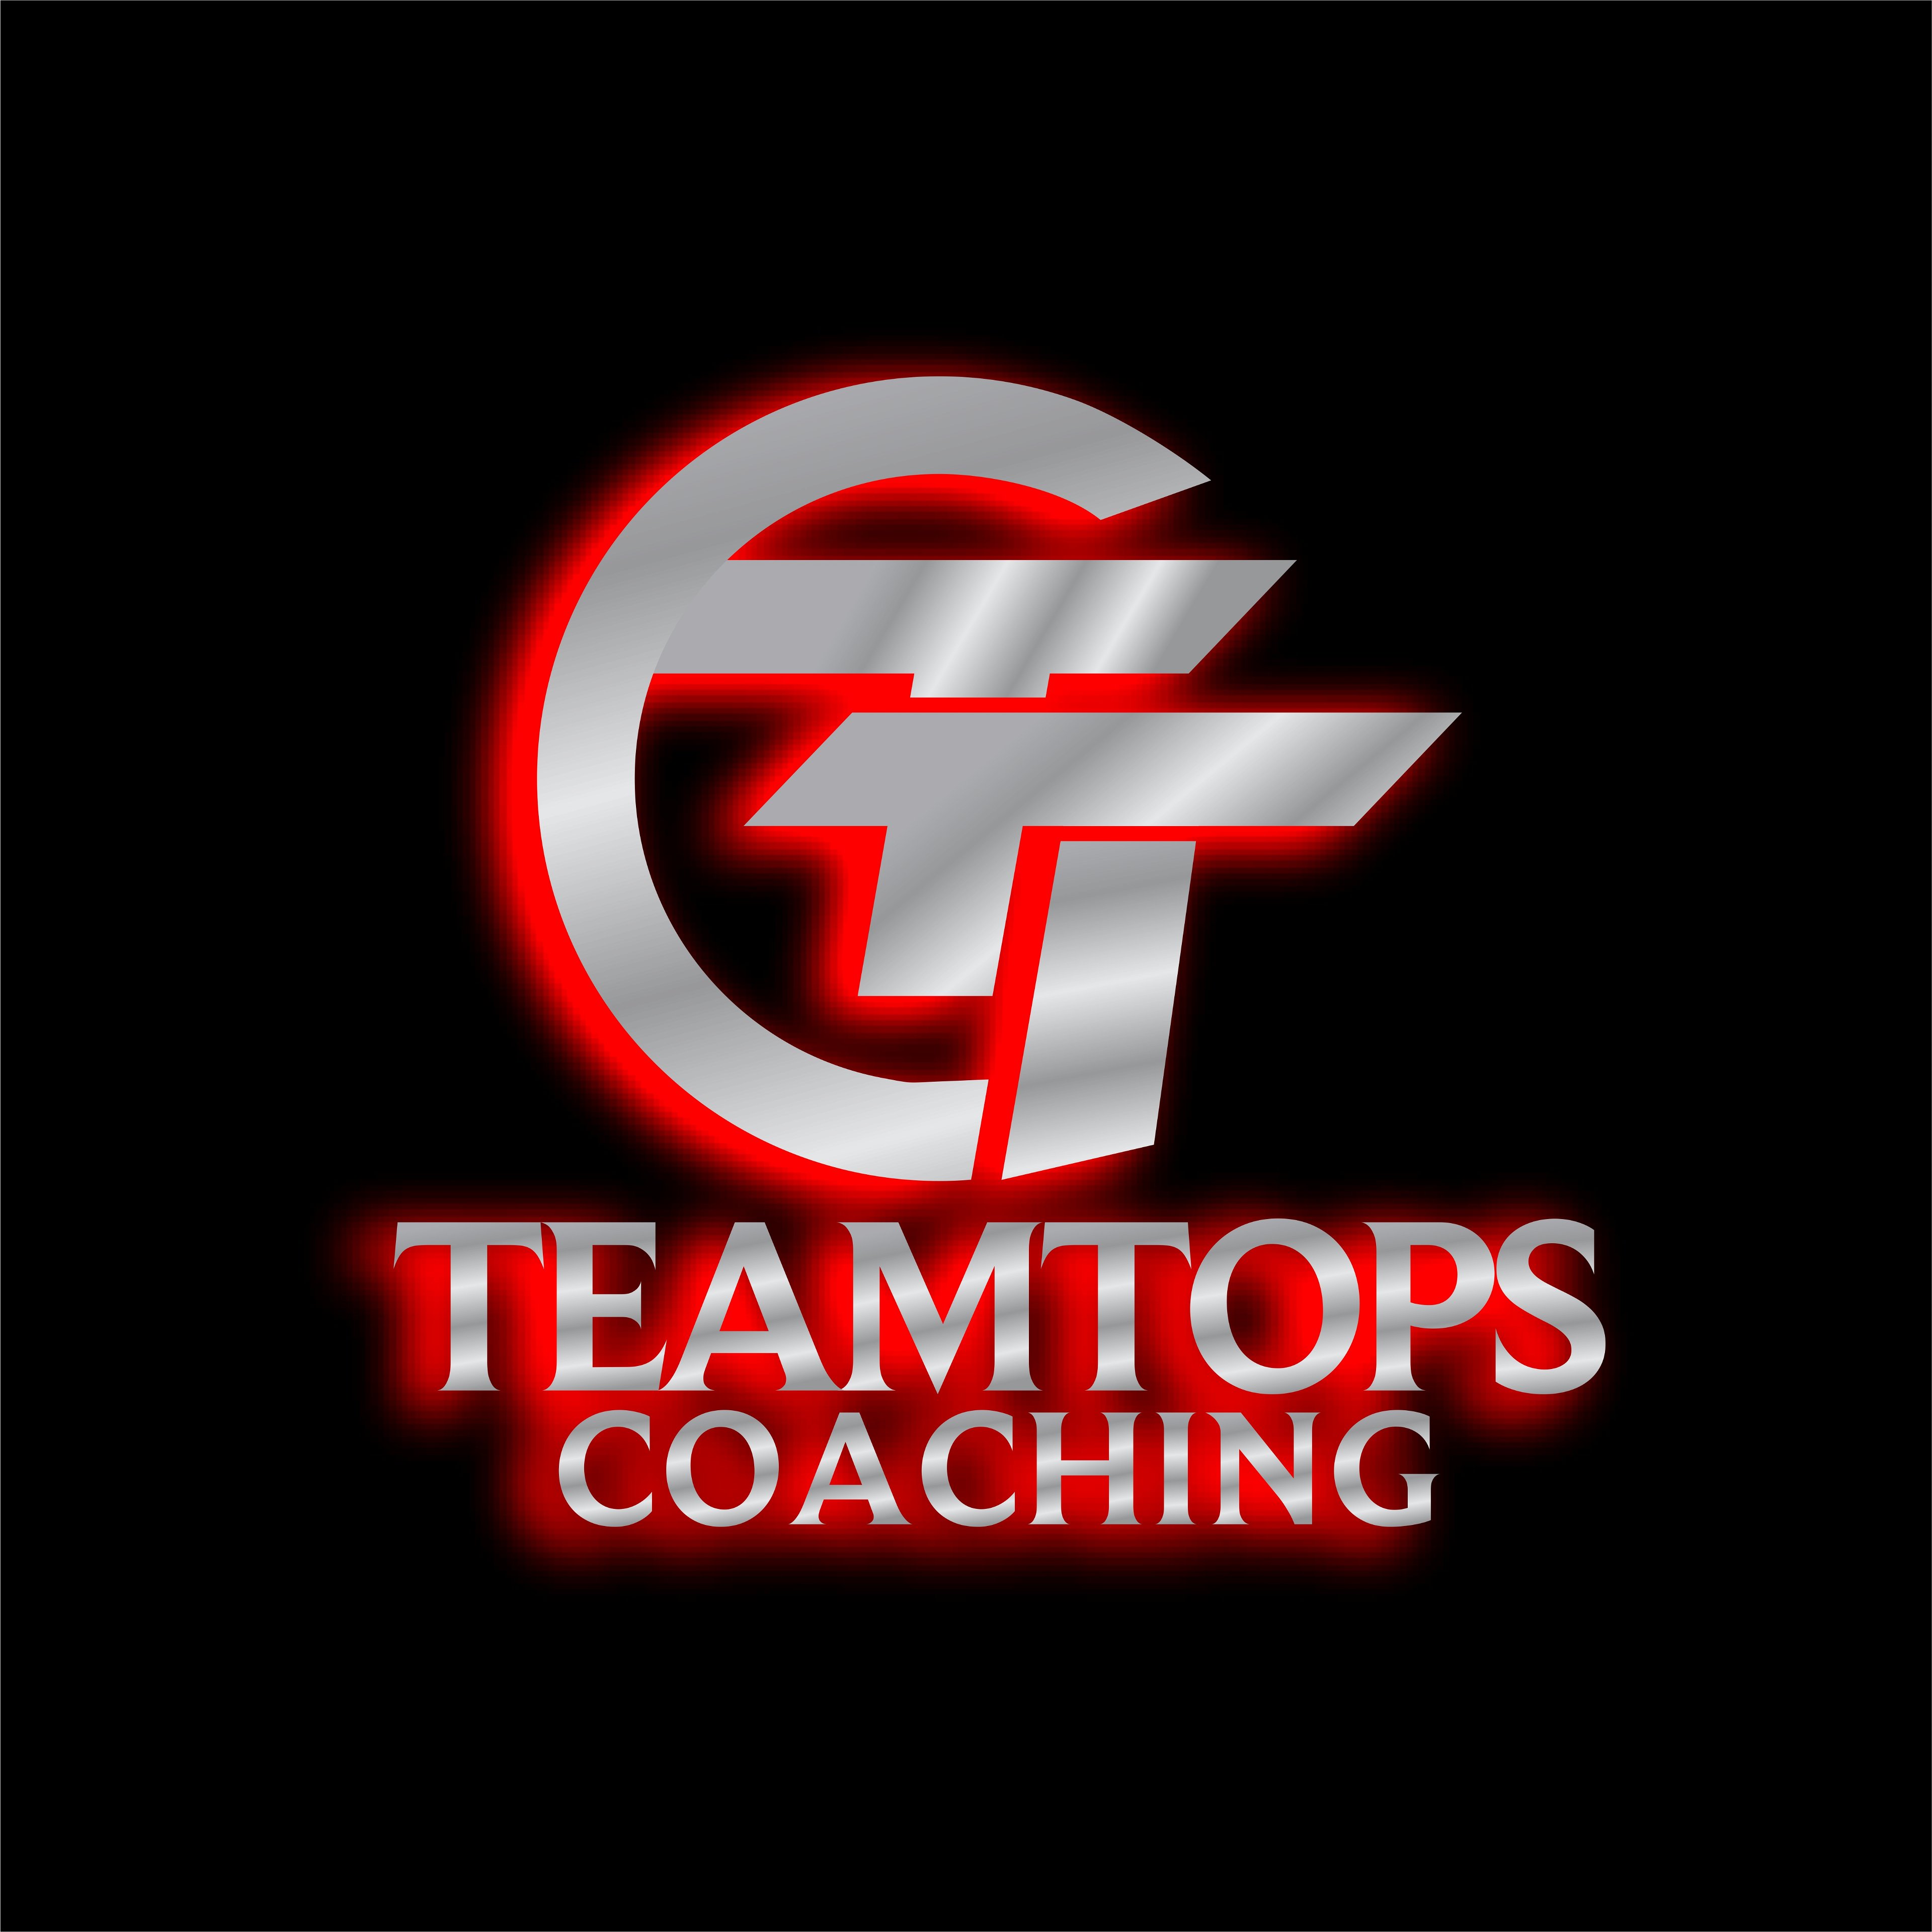 Teamtops Coaching logo